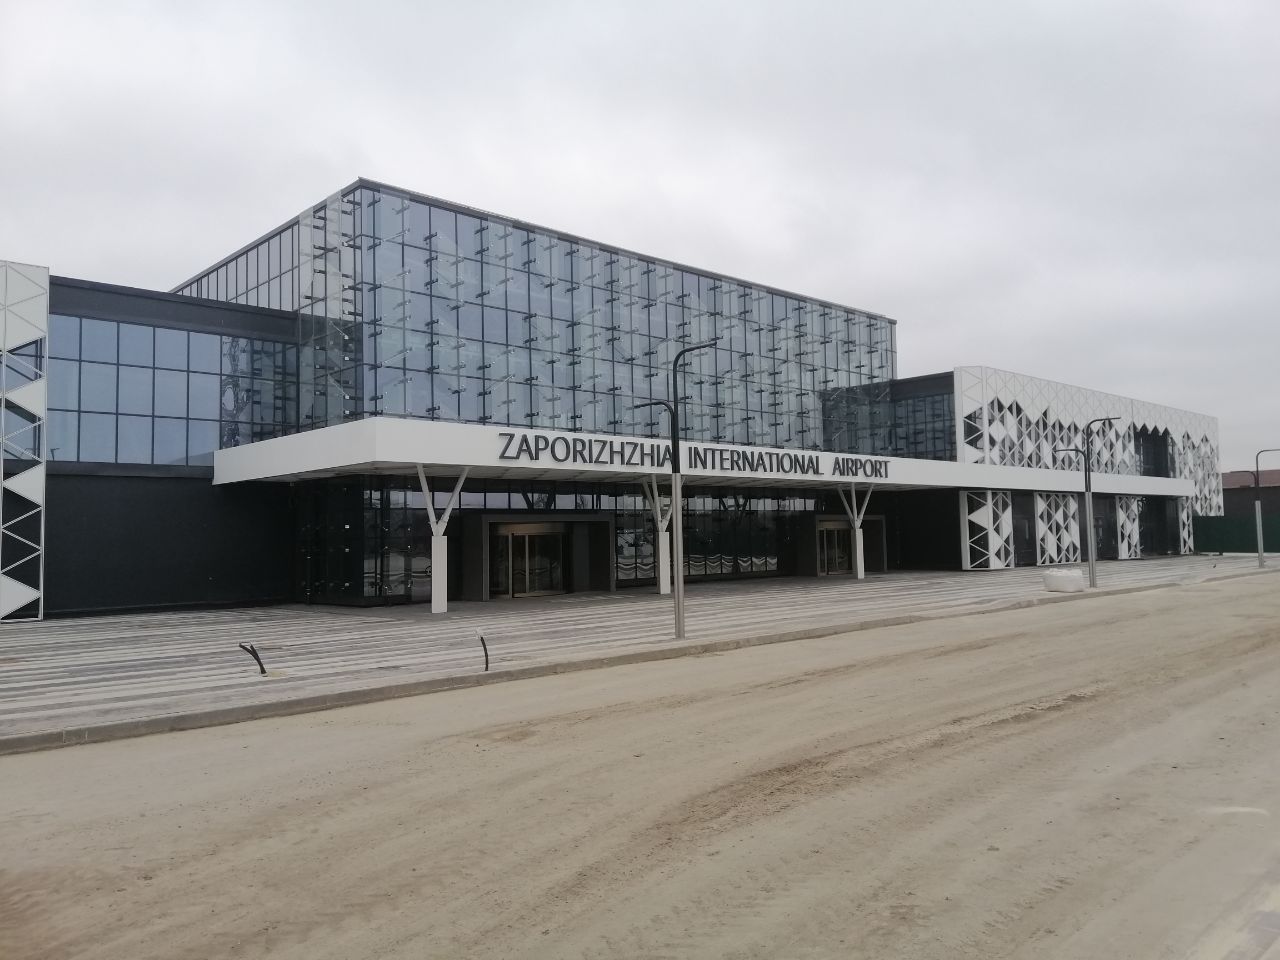 Терминал в запорожском аэропорту блокирован и парализован на неопределенный срок из-за обысков СБУ (ФОТО, ВИДЕО)